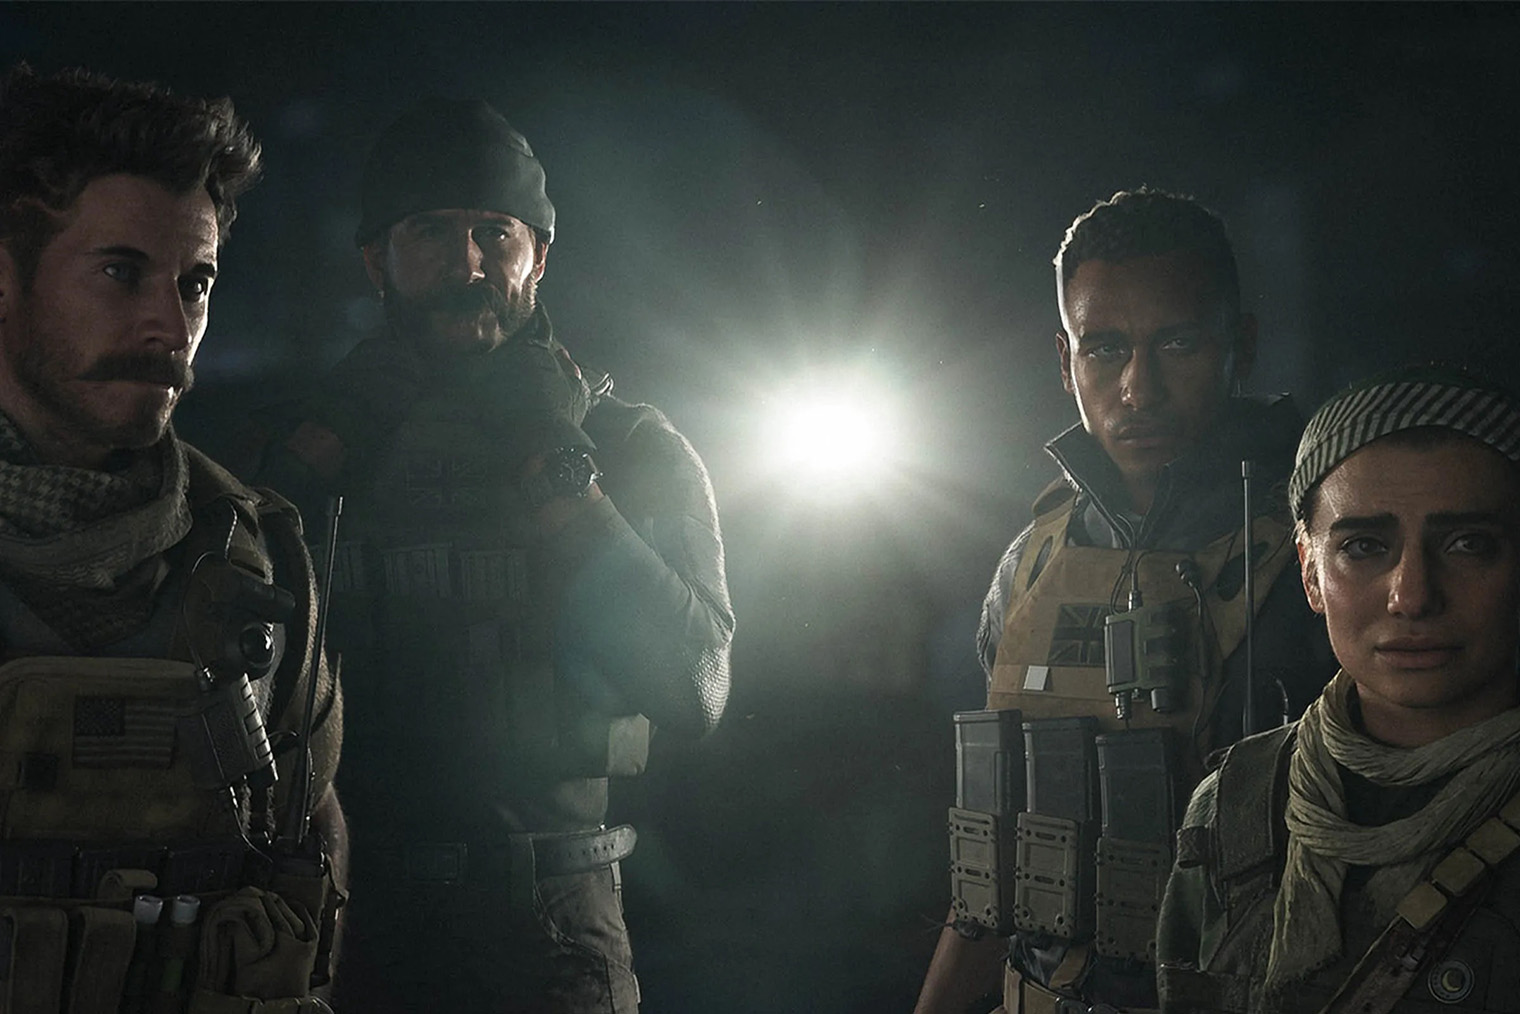 Сюжетная кампания в первой части перезапуска Modern Warfare получилась невнятной и с малым количеством запоминающихся моментов